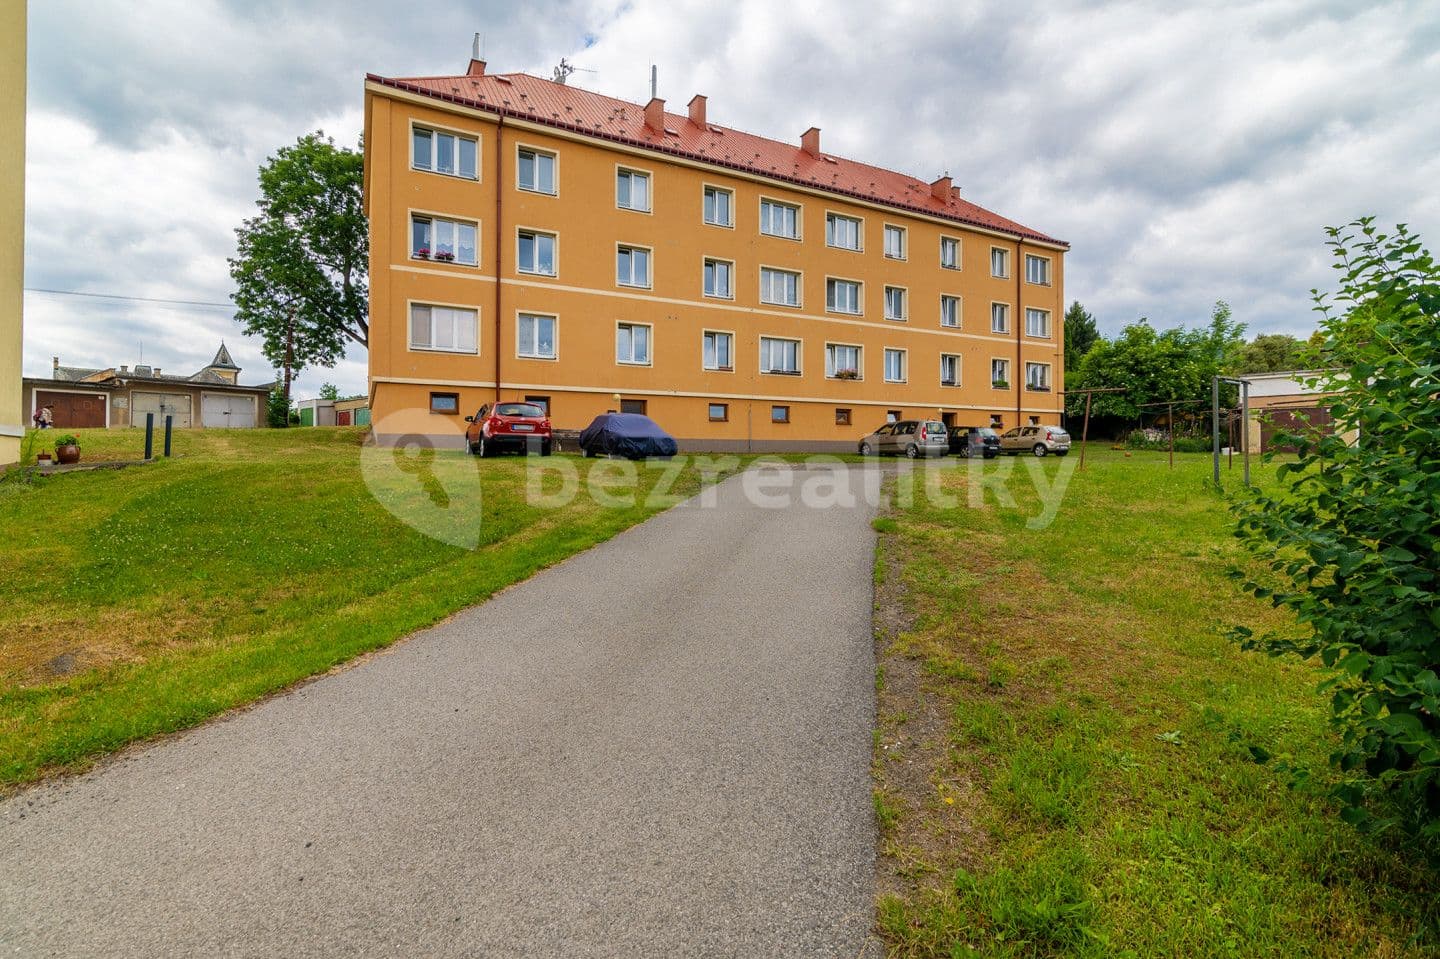 2 bedroom flat for sale, 57 m², Hřbitovní, Český Dub, Liberecký Region